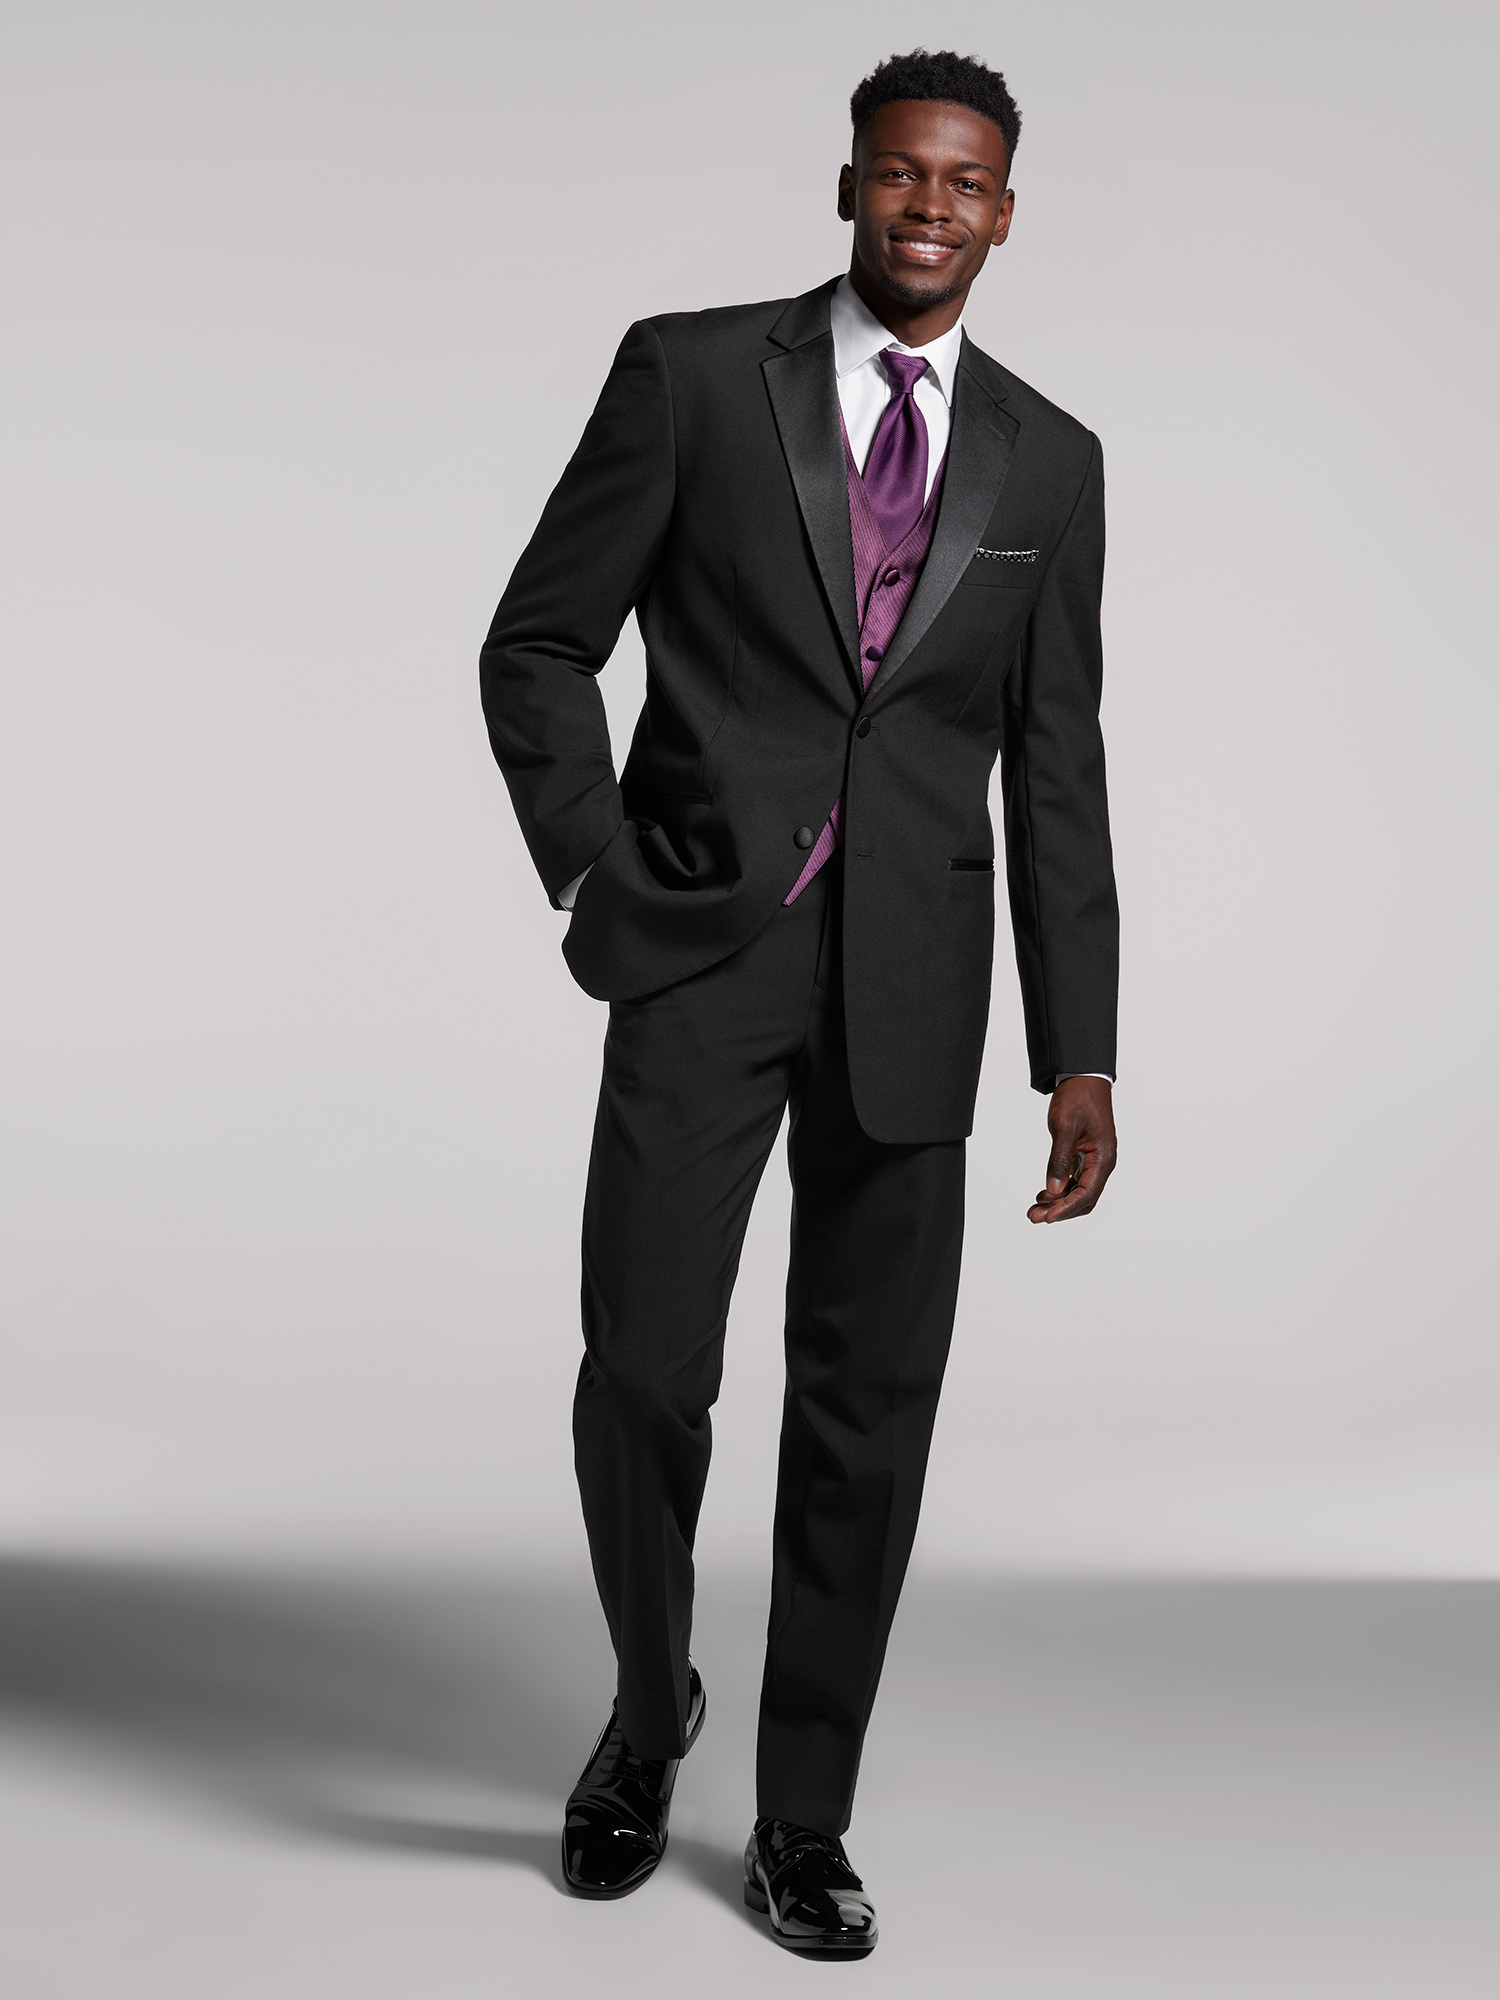 Pack Of 2 Slim 'N Lift Vest For Men (Black)